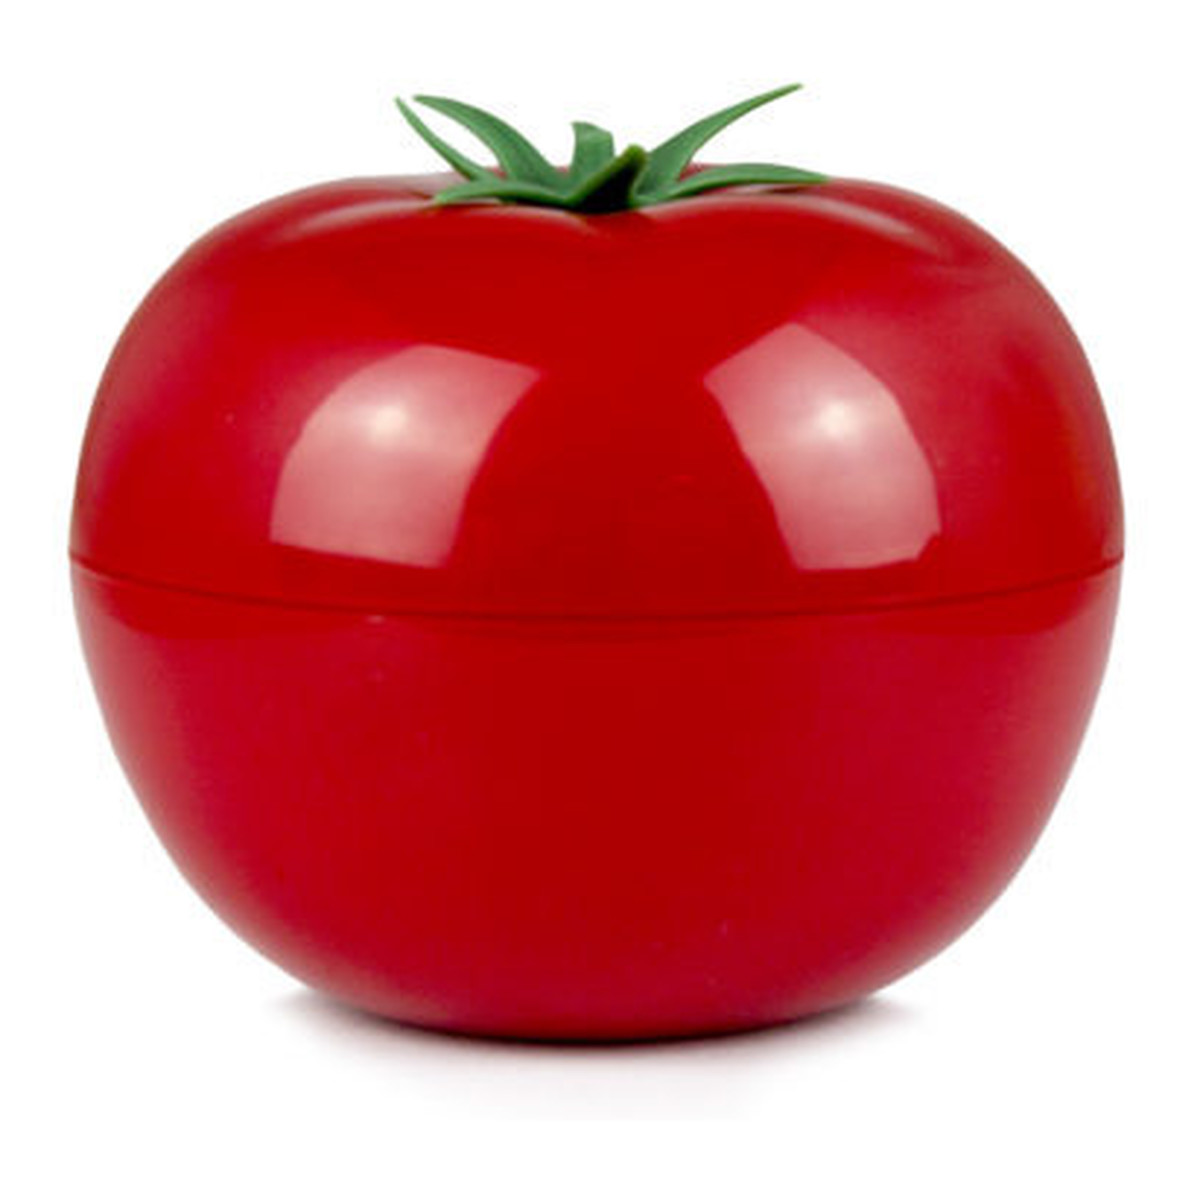 Fancy Handy Pomidor Maseczka do twarzy 30ml